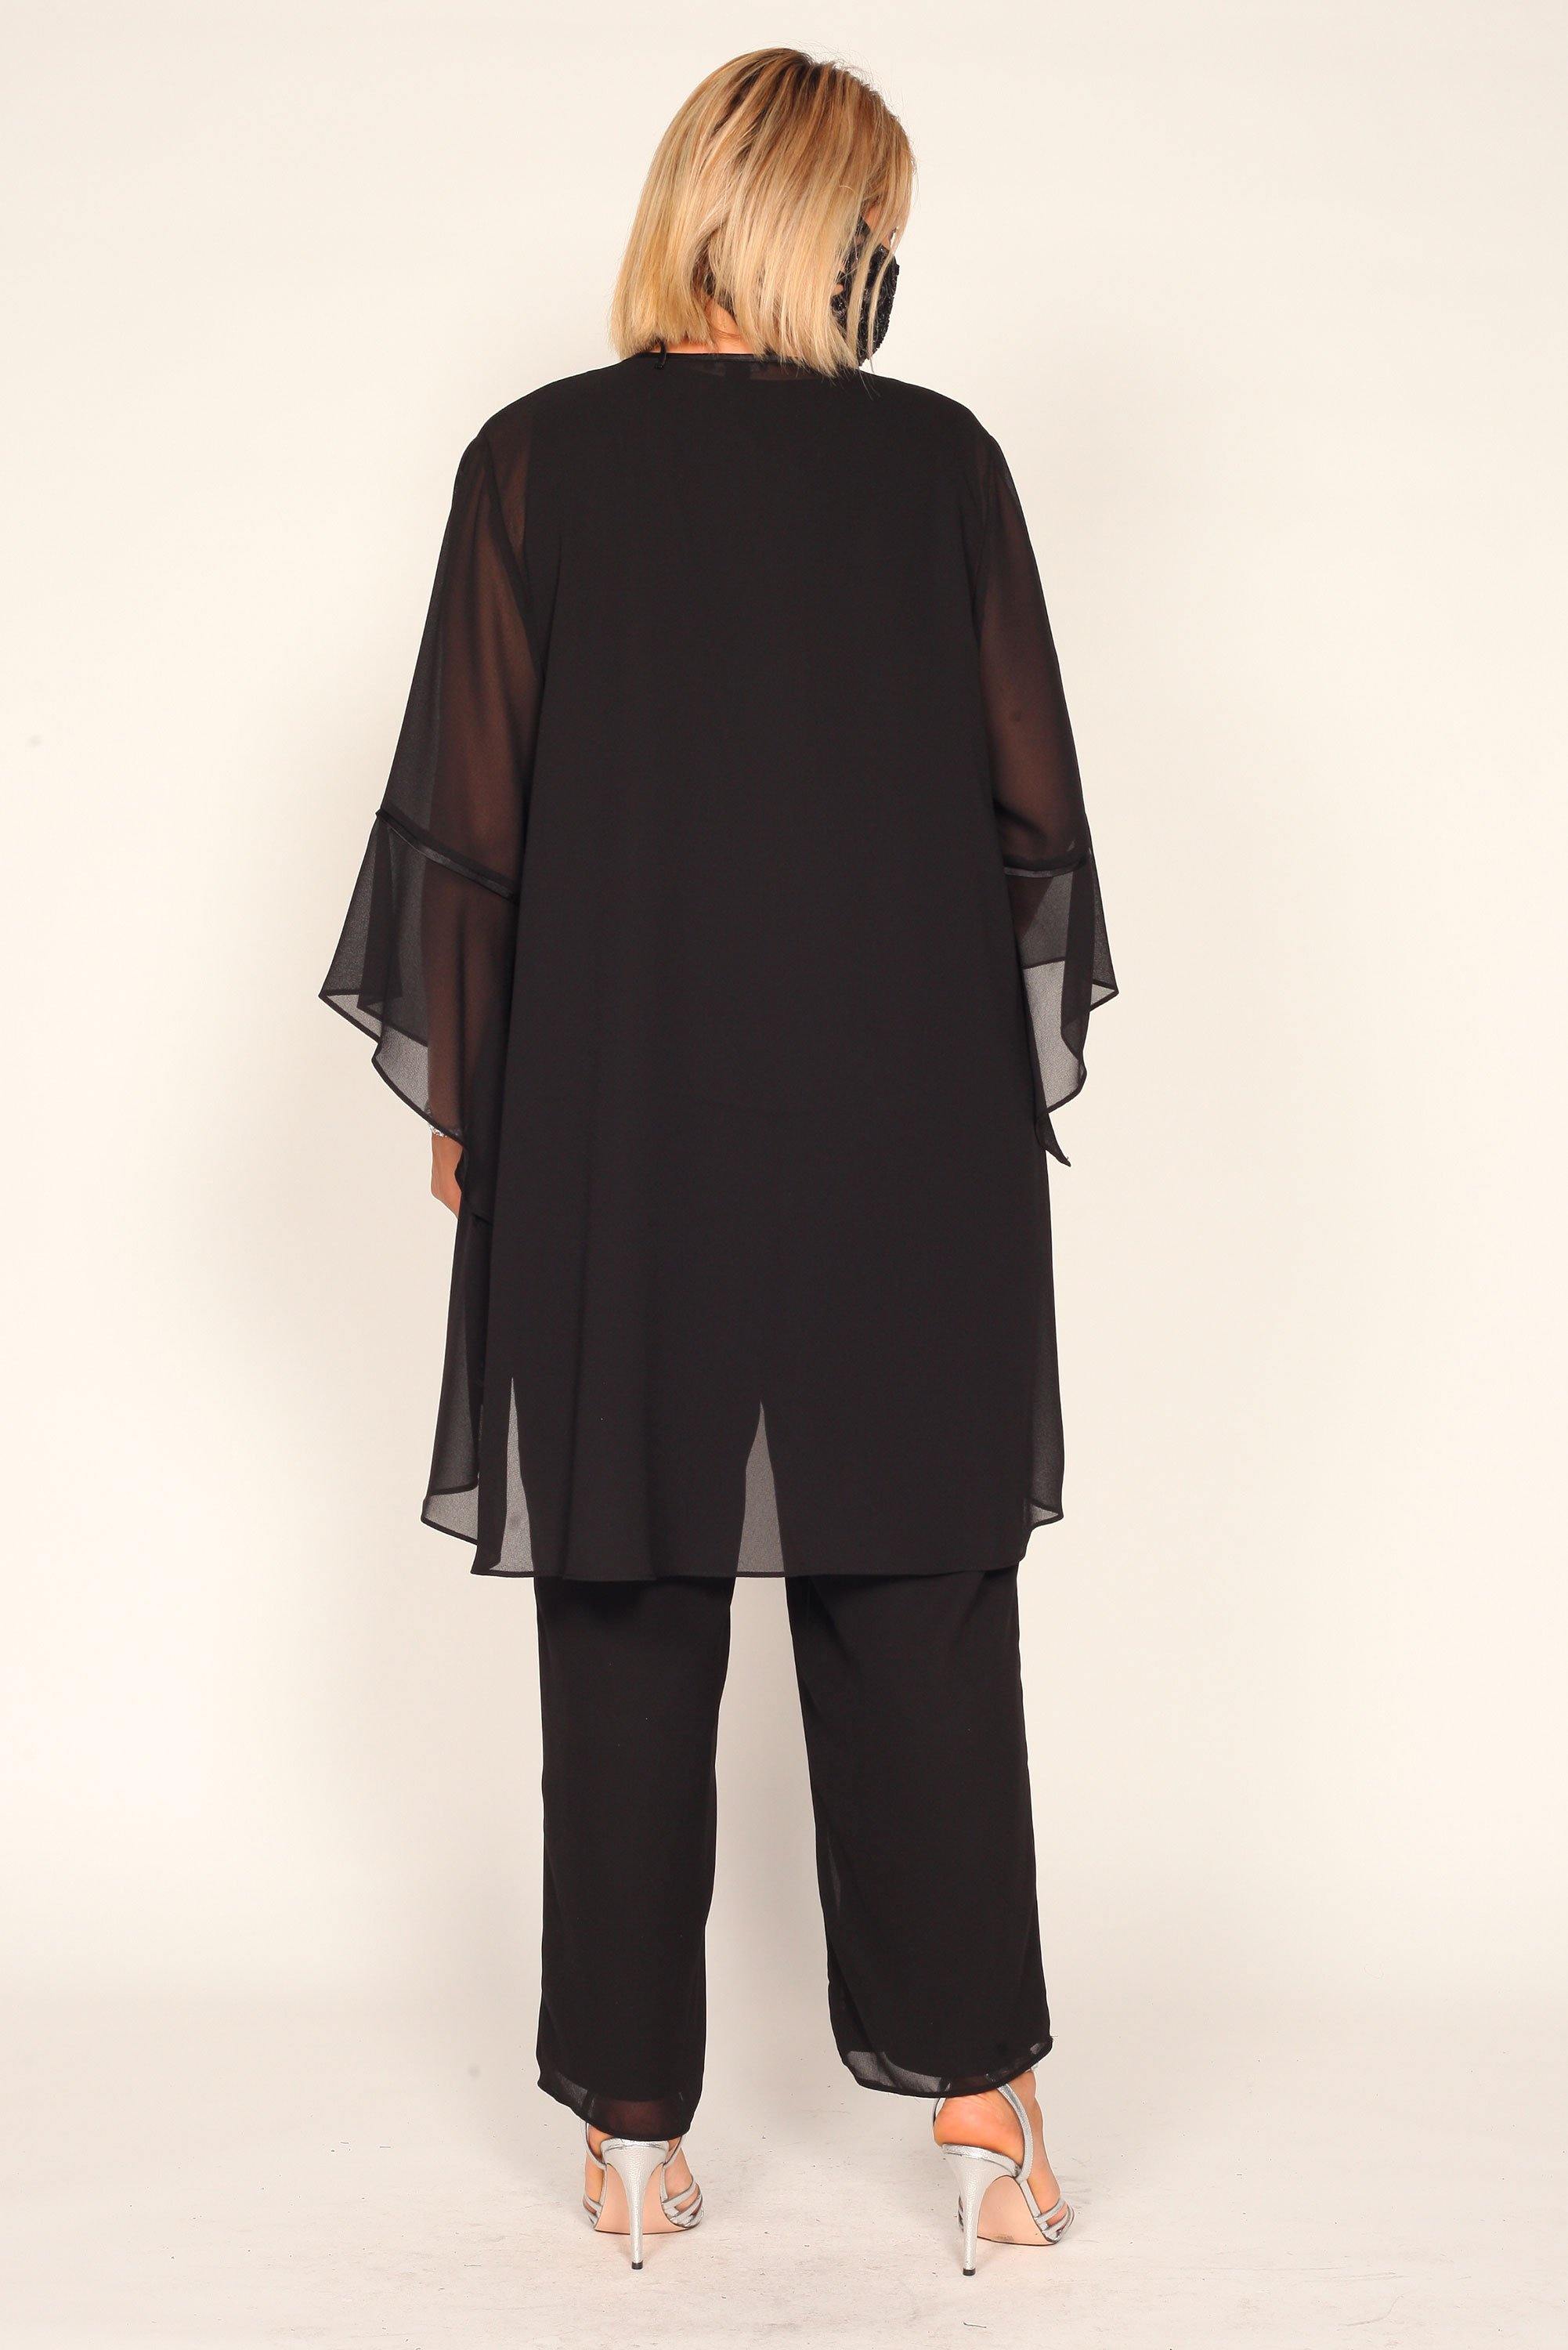 Le Bos Women's Plus Size Black Pant Suit - The Dress Outlet